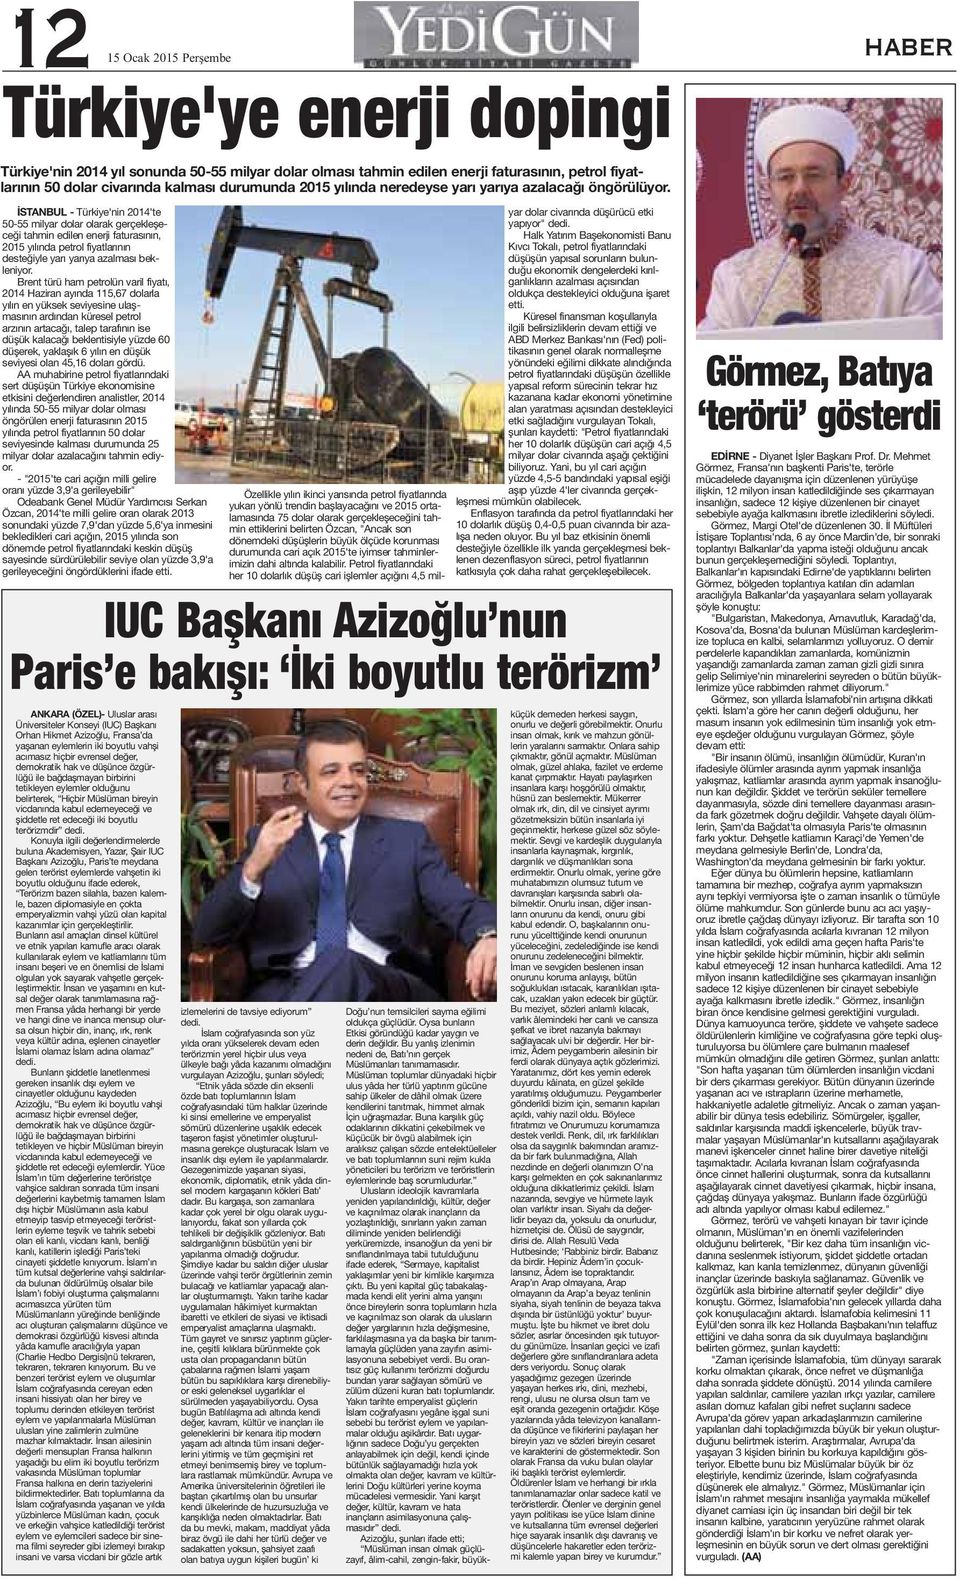 İSTANBUL - Türkiye'nin 2014'te 50-55 milyar dolar olarak gerçekleşeceği tahmin edilen enerji faturasının, 2015 yılında petrol fiyatlarının desteğiyle yarı yarıya azalması bekleniyor.